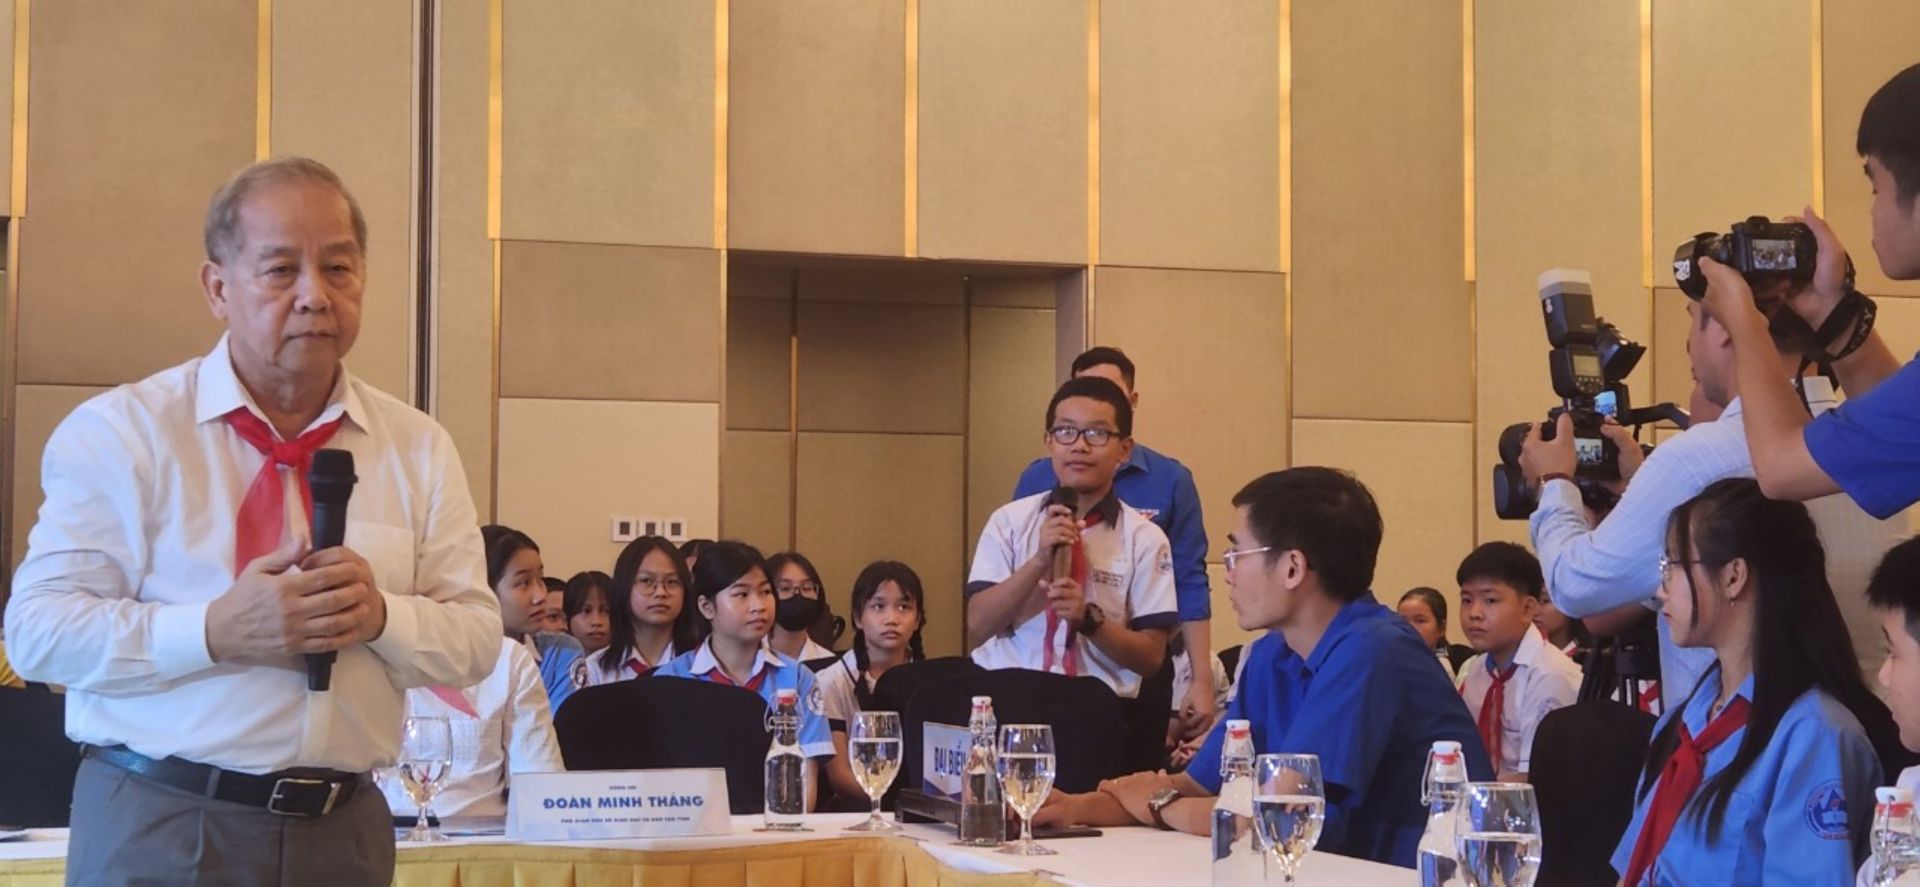 Phó Bí thư Thường trực Tỉnh ủy Phan Ngọc Thọ phát biểu tại chương trình gặp mặt.